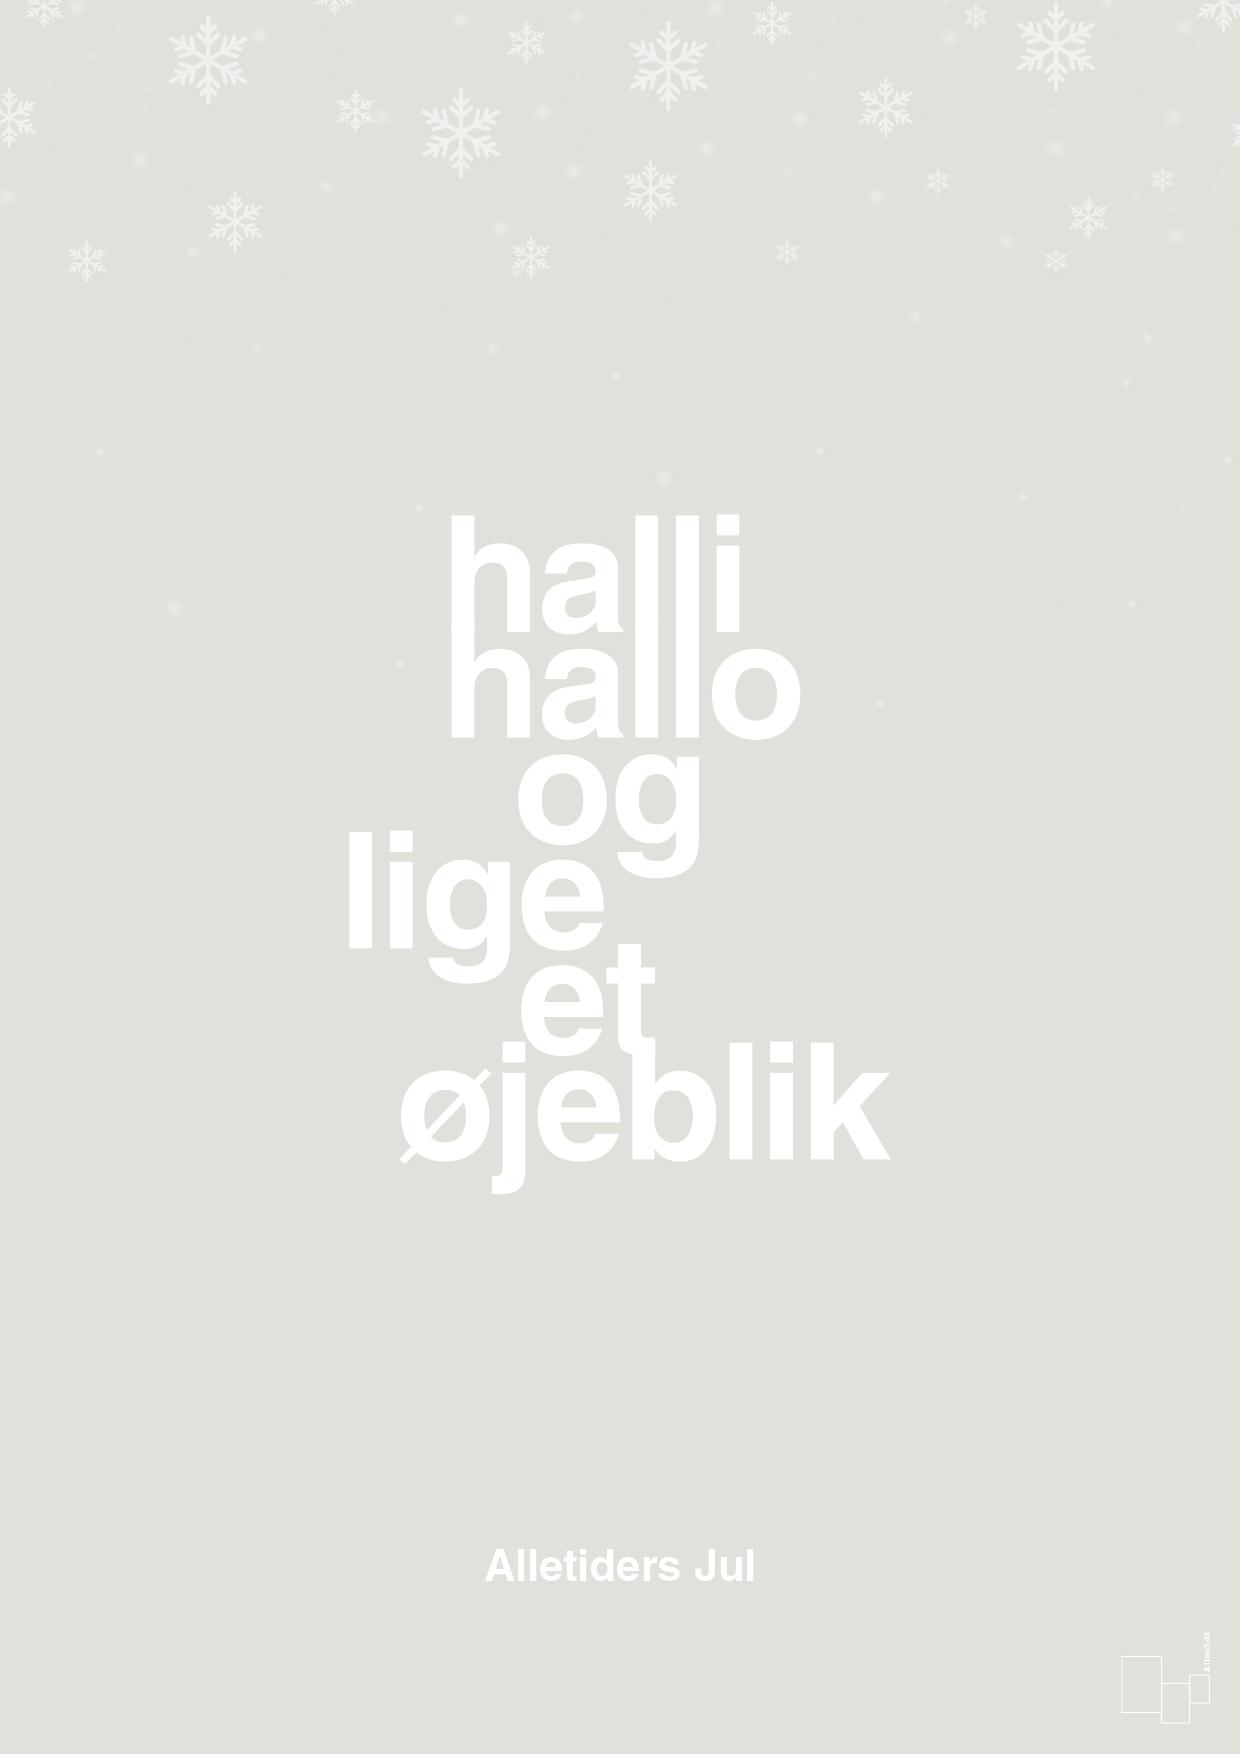 halli hallo og lige et øjeblik - Plakat med Begivenheder i Painters White